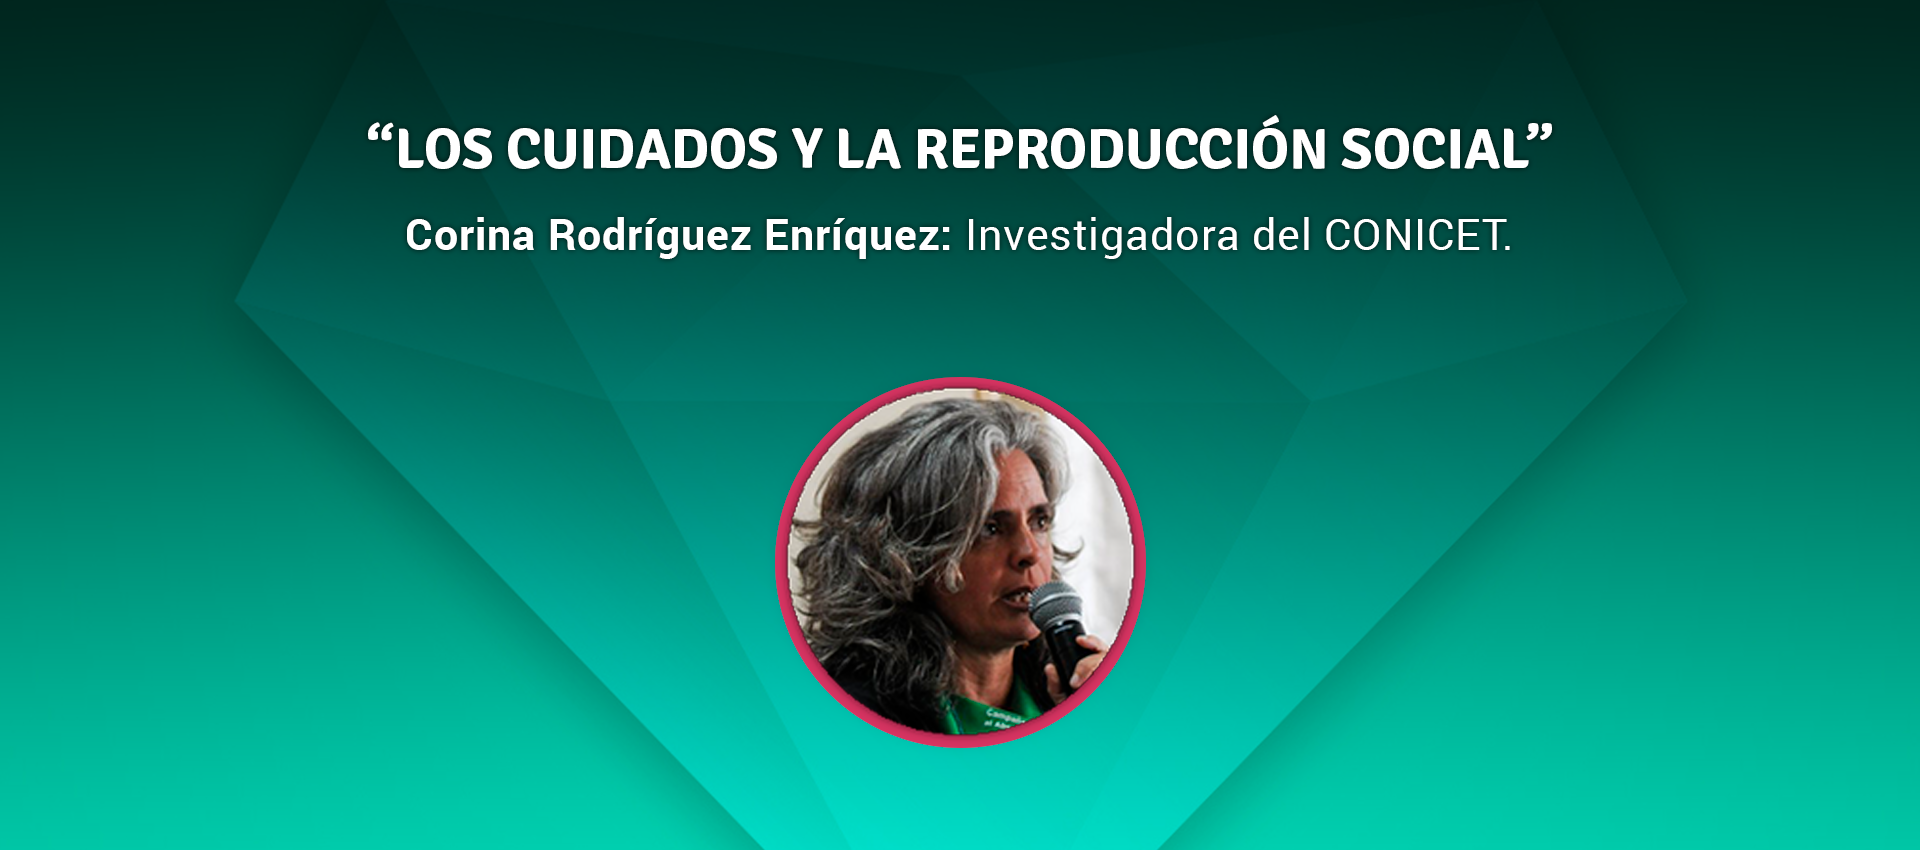 Rodriguez Enriquez Los Cuidados y La Reproduccion Social